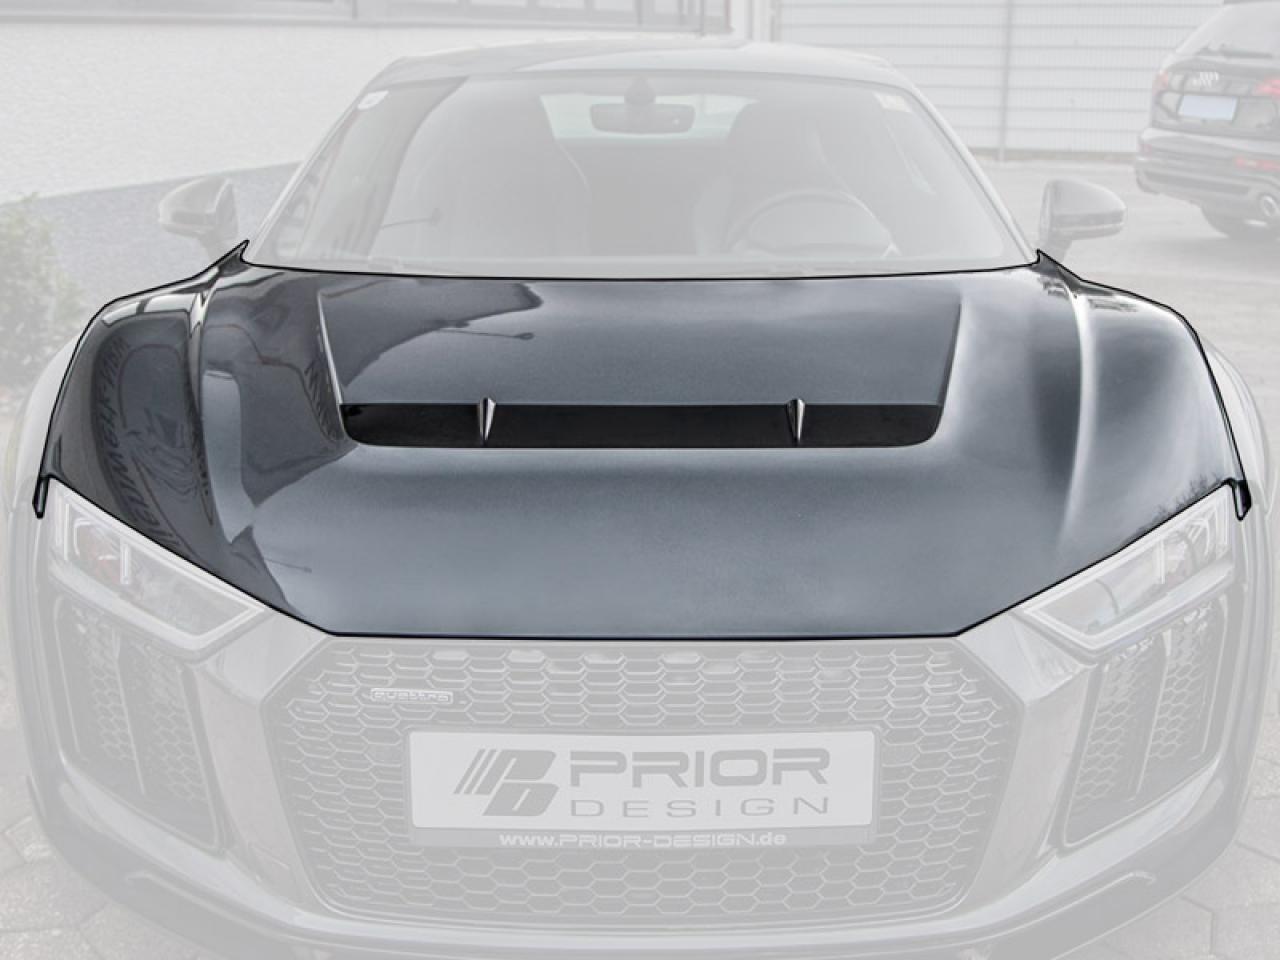 PD800WB Bonnet for Audi R8 4S Coupe/Spyder [2015+]